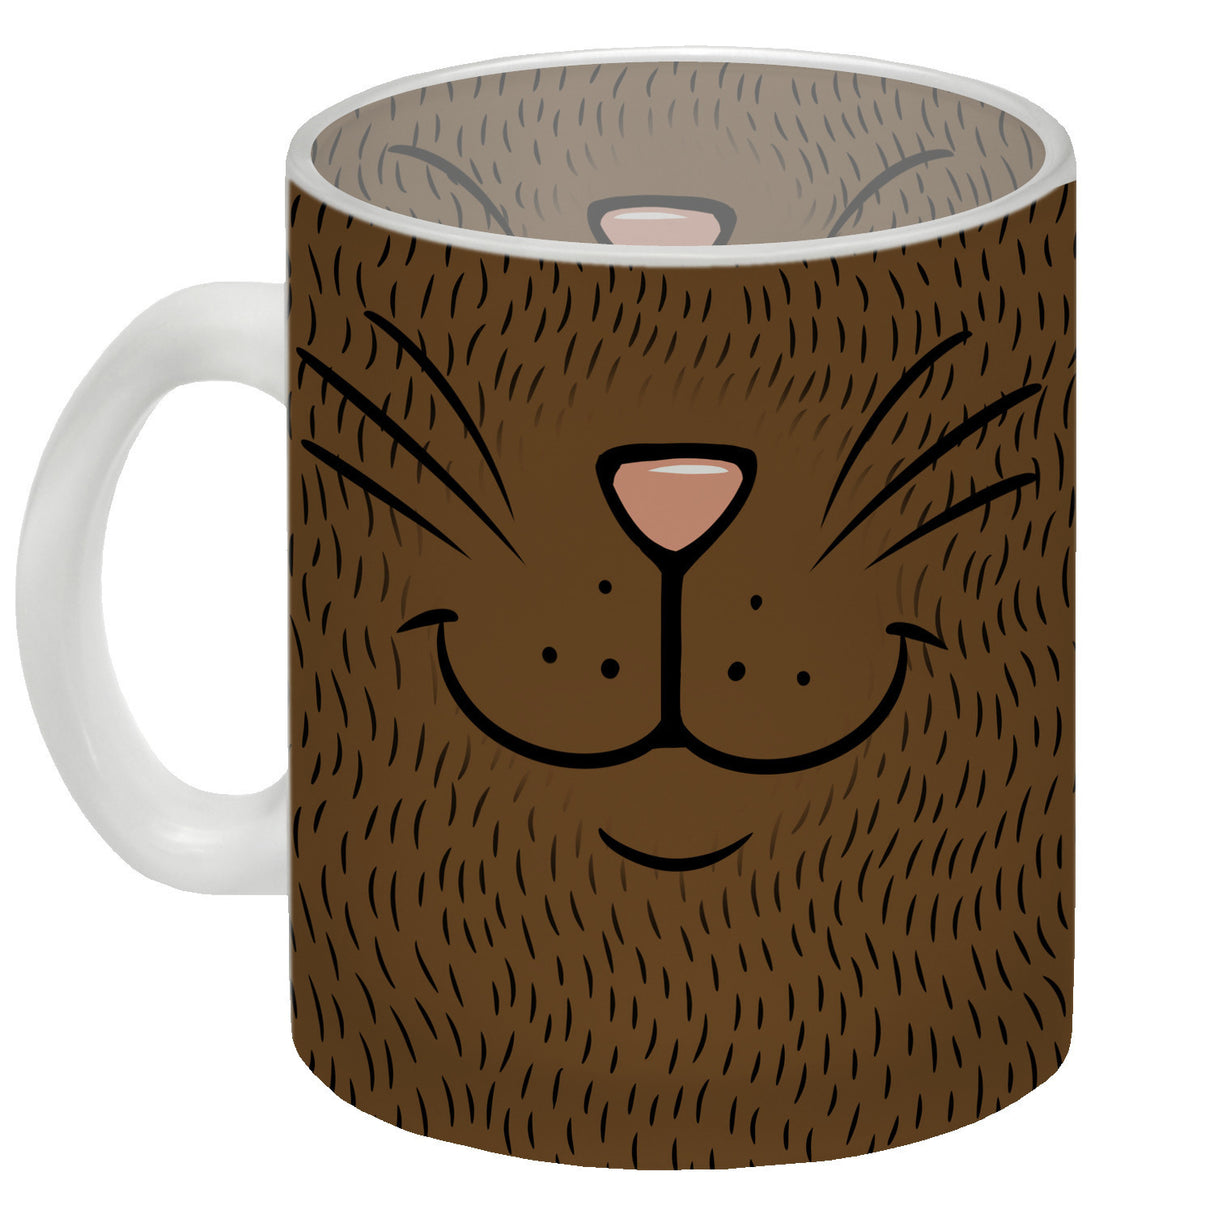 Katzengesicht Kaffeebecher mit süßem Lächeln einer Katze